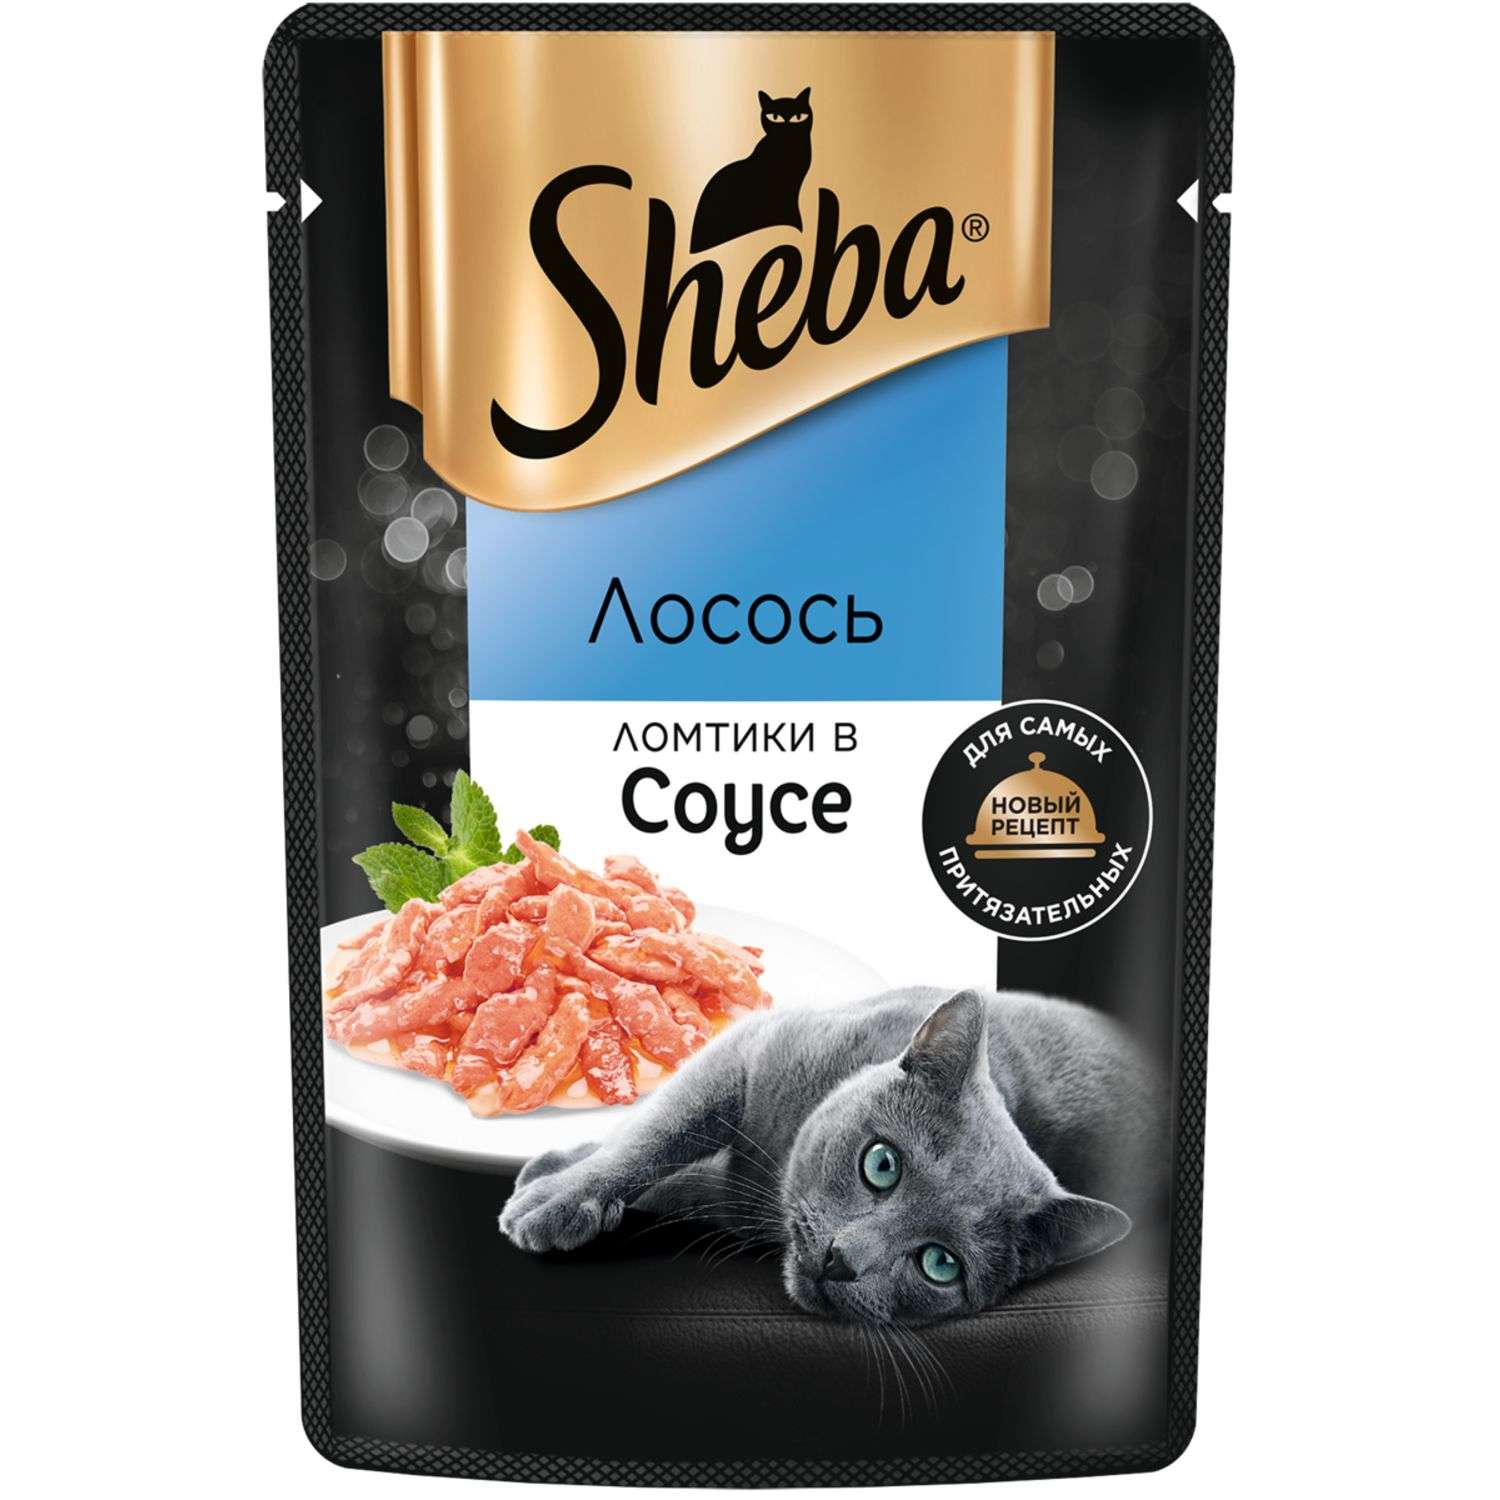 Корм для кошек Sheba 75г ломтики в соусе с лососем - фото 2